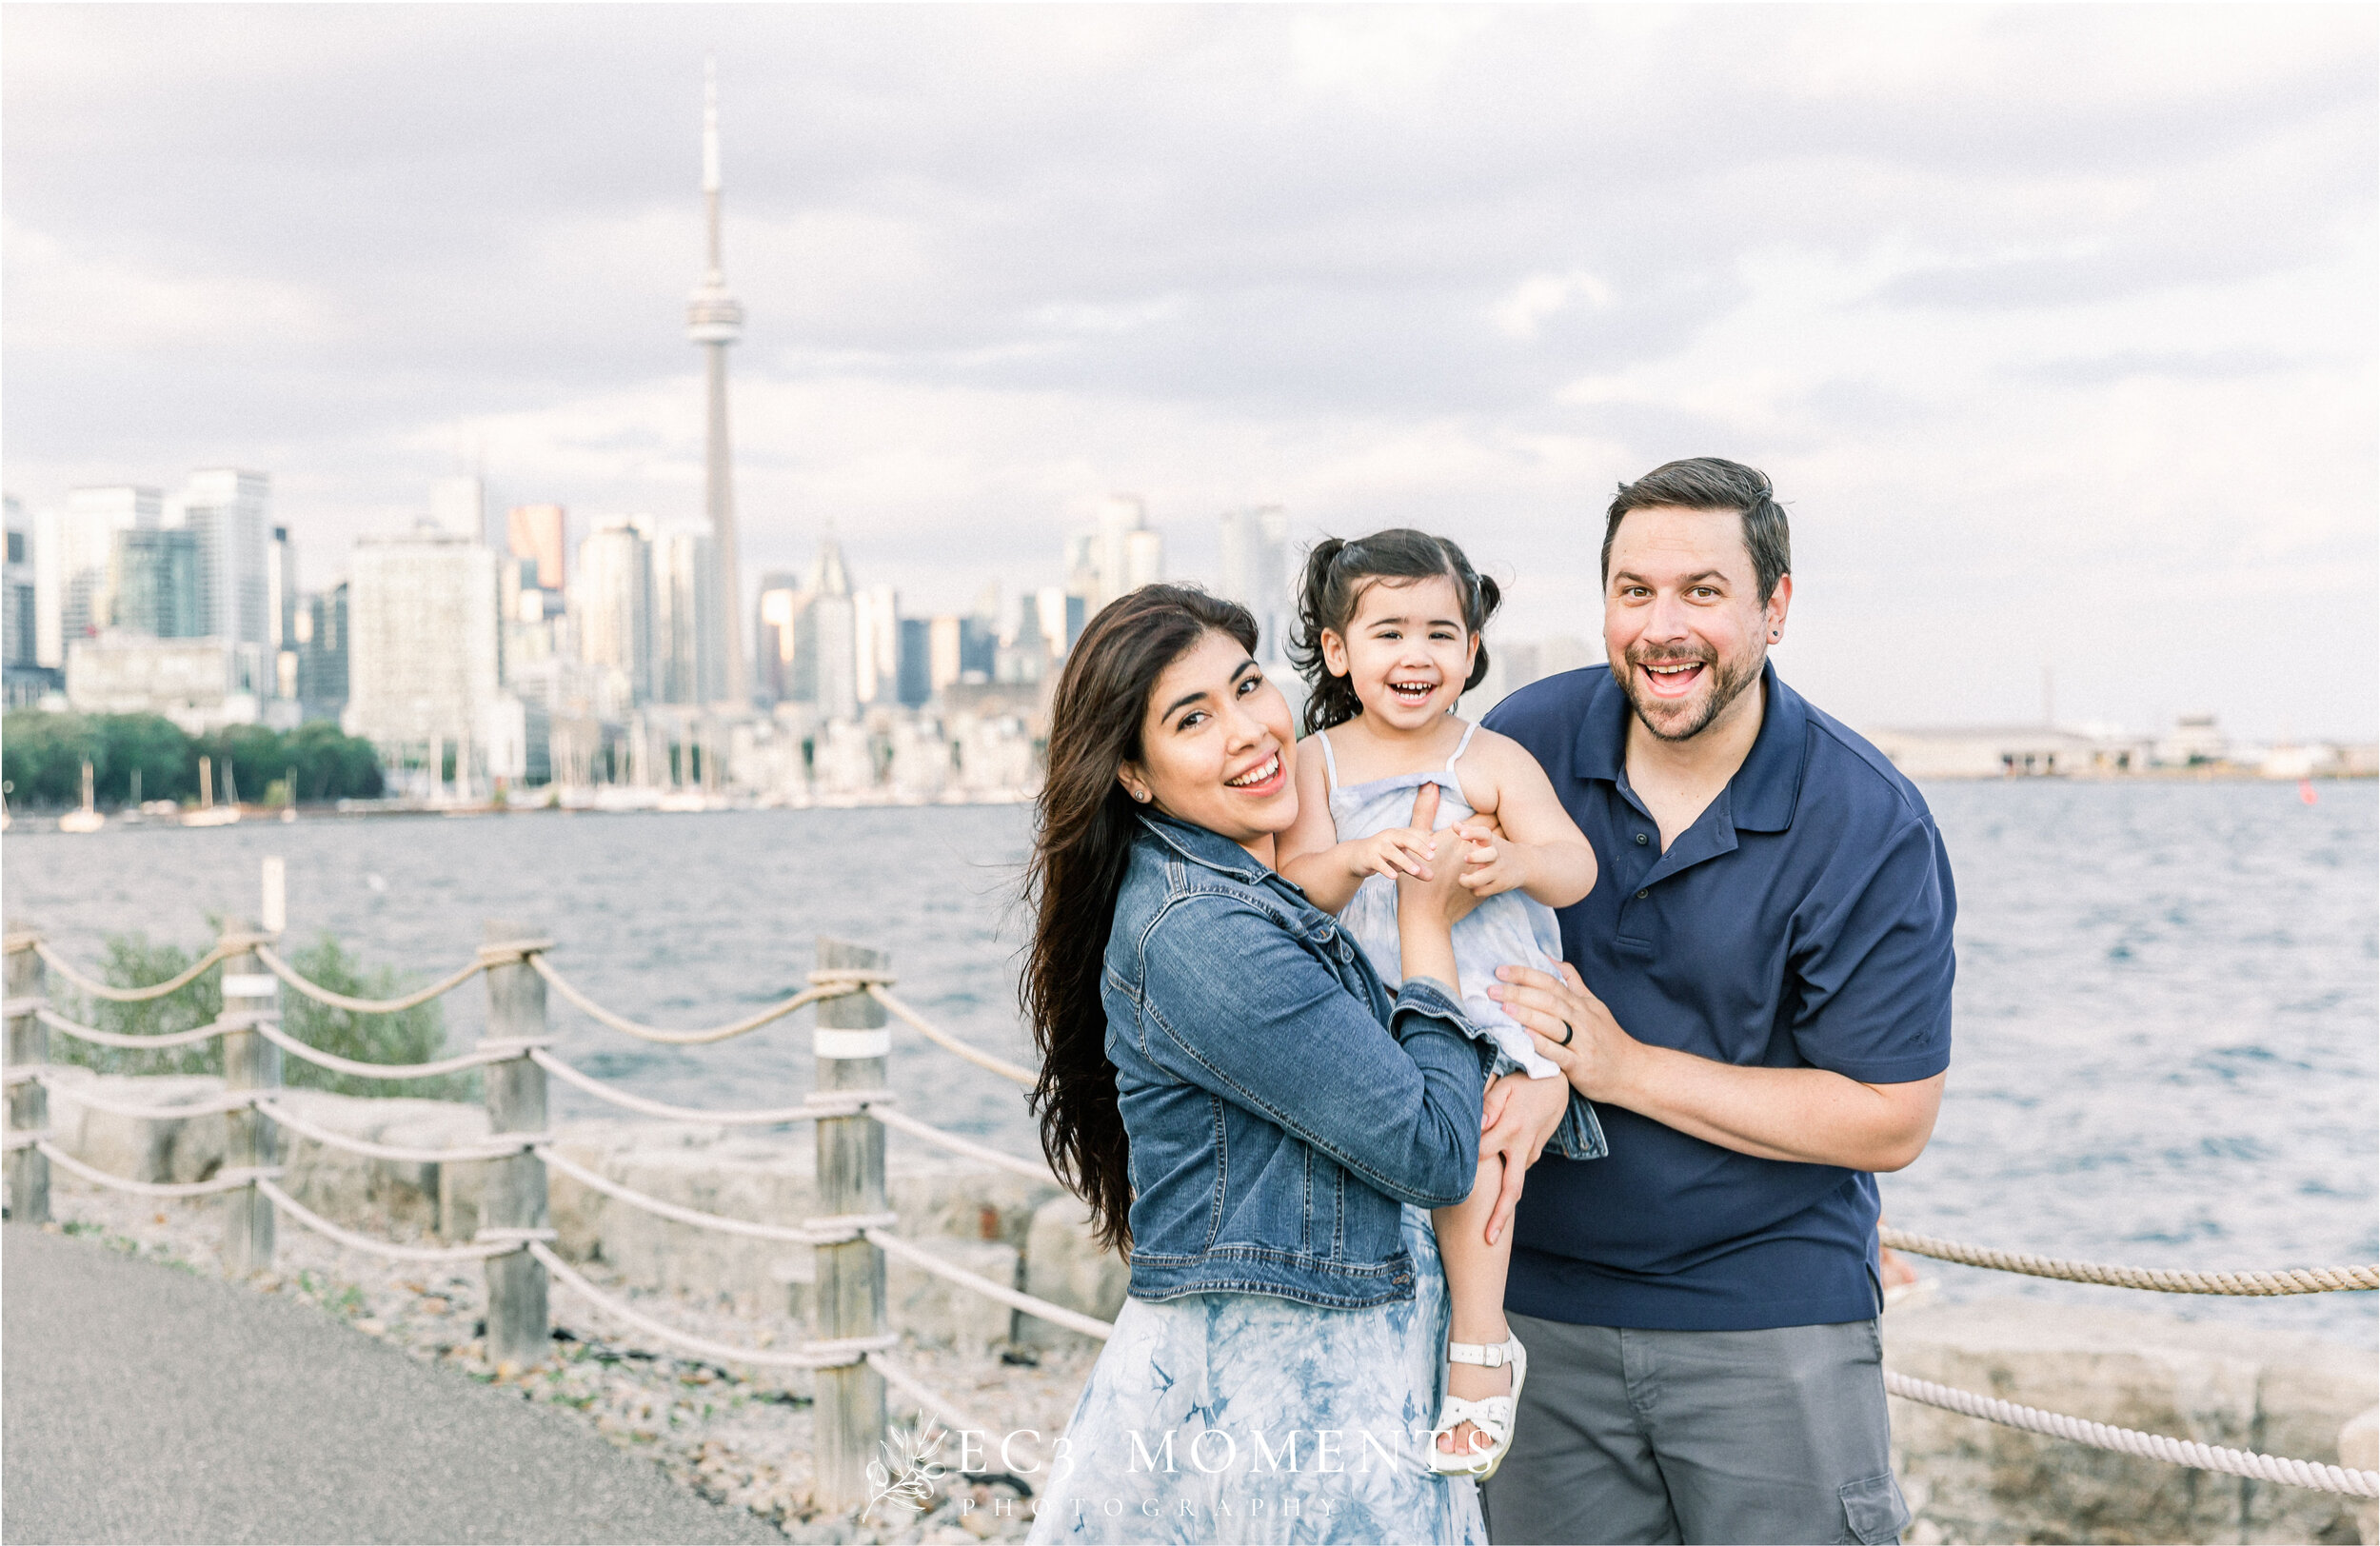 Paola's Downtown Toronto Family Photos - 3.jpg